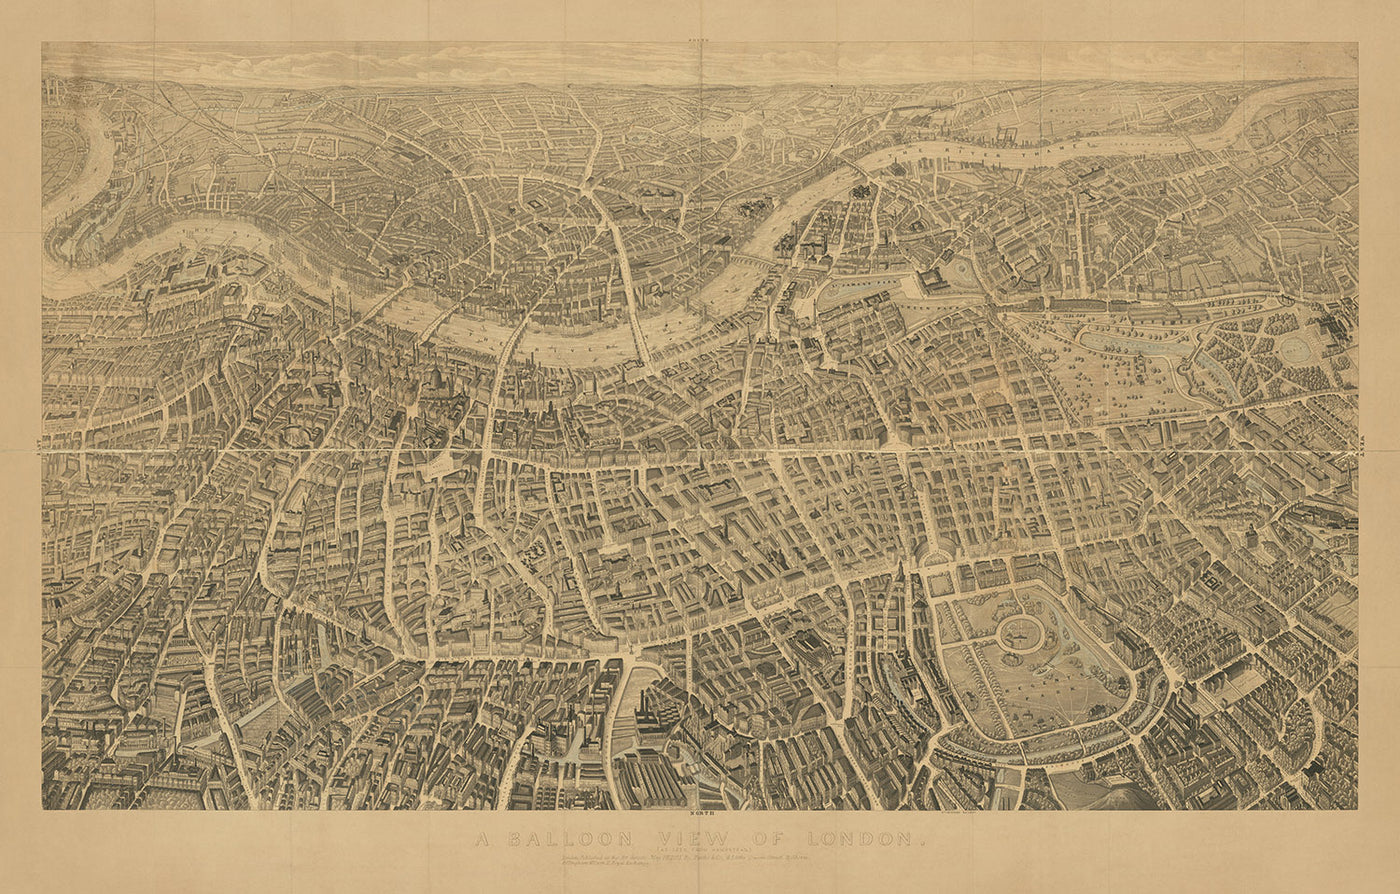 Mapa pictórico de Londres por Banks, 1851: Palacio de Buckingham, San Pablo, Parlamento, Hyde Park, Palacio de Lambeth